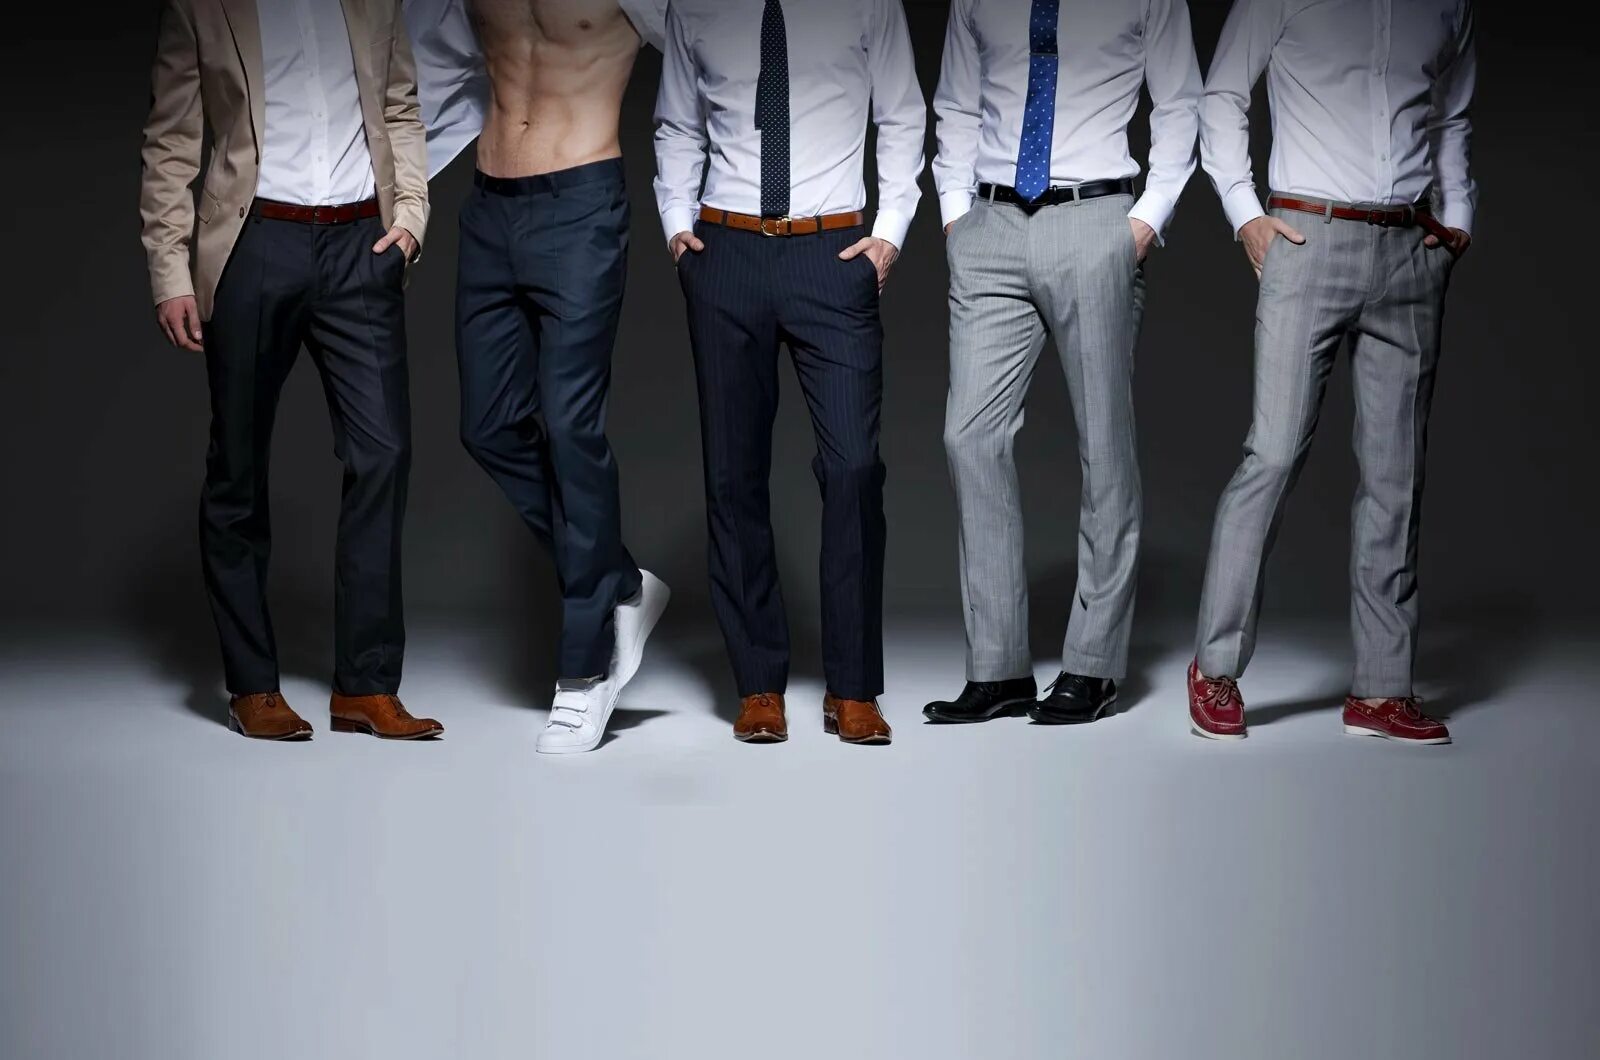 Много мальчиков смотрело. Мужчина в брюках. Брюки мужские. Реклама мужских брюк. Много брюк.